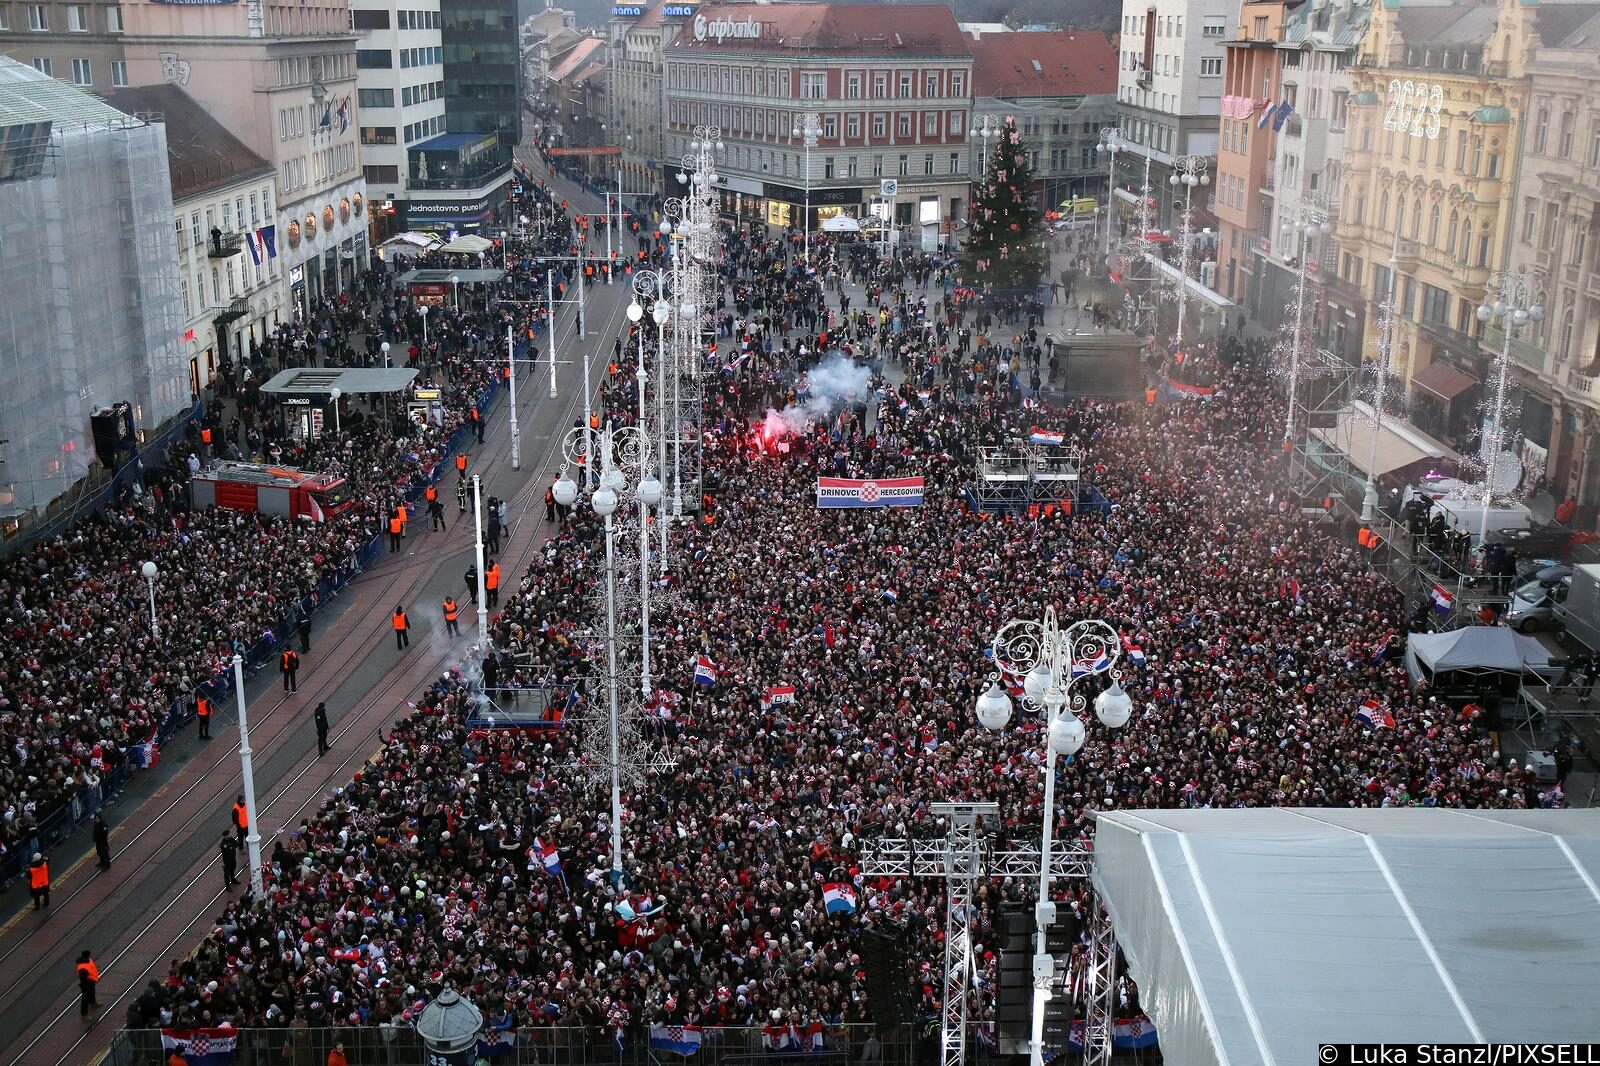 Zagreb: Pogled na glavni Trg prepun navijača koji su spremni za doček Vatrenih